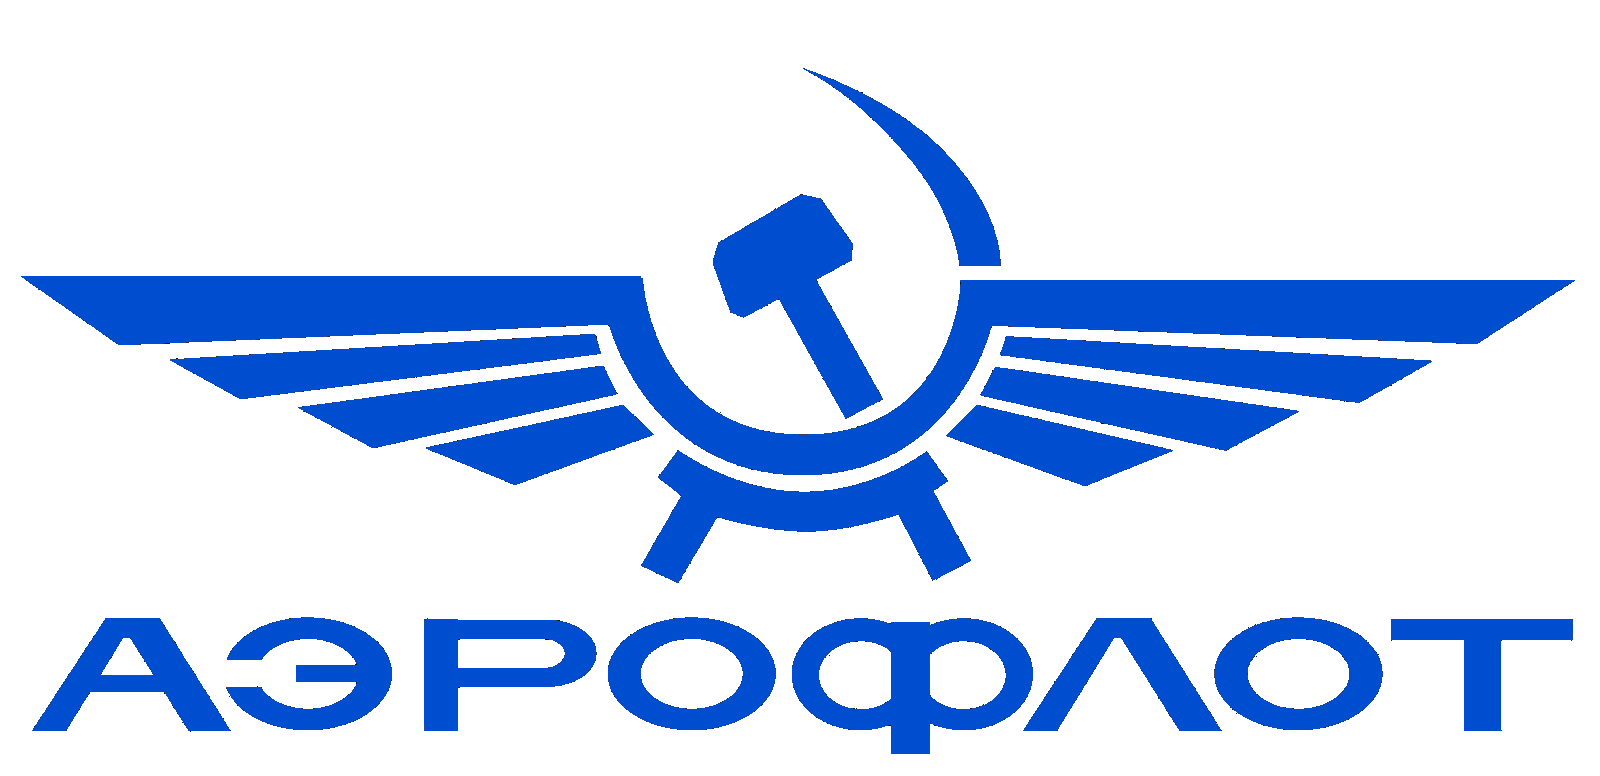 Aeroflot Logo - Aeroflot Logo PNG Transparent Aeroflot Logo.PNG Images. | PlusPNG